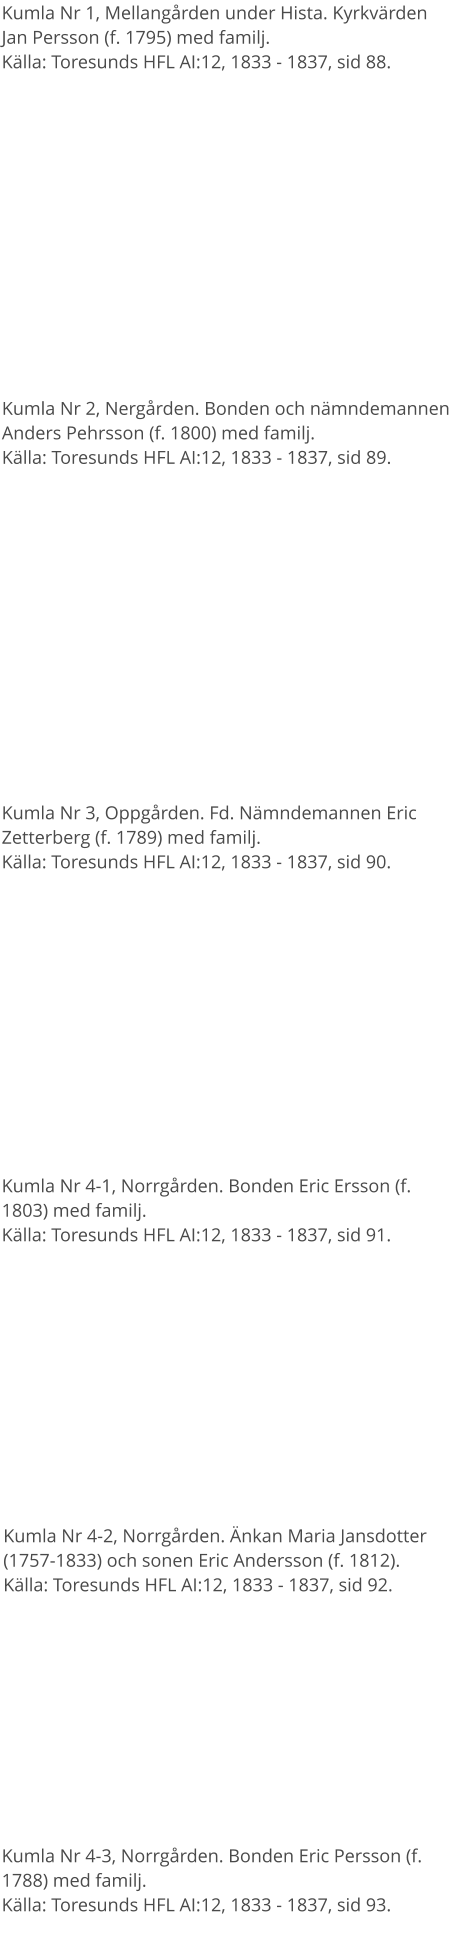 Kumla Nr 1, Mellangården under Hista. Kyrkvärden Jan Persson (f. 1795) med familj.Källa: Toresunds HFL AI:12, 1833 - 1837, sid 88. Kumla Nr 2, Nergården. Bonden och nämndemannen Anders Pehrsson (f. 1800) med familj.Källa: Toresunds HFL AI:12, 1833 - 1837, sid 89. Kumla Nr 3, Oppgården. Fd. Nämndemannen Eric Zetterberg (f. 1789) med familj.Källa: Toresunds HFL AI:12, 1833 - 1837, sid 90. Kumla Nr 4-1, Norrgården. Bonden Eric Ersson (f. 1803) med familj.Källa: Toresunds HFL AI:12, 1833 - 1837, sid 91. Kumla Nr 4-2, Norrgården. Änkan Maria Jansdotter (1757-1833) och sonen Eric Andersson (f. 1812).Källa: Toresunds HFL AI:12, 1833 - 1837, sid 92. Kumla Nr 4-3, Norrgården. Bonden Eric Persson (f. 1788) med familj.Källa: Toresunds HFL AI:12, 1833 - 1837, sid 93.